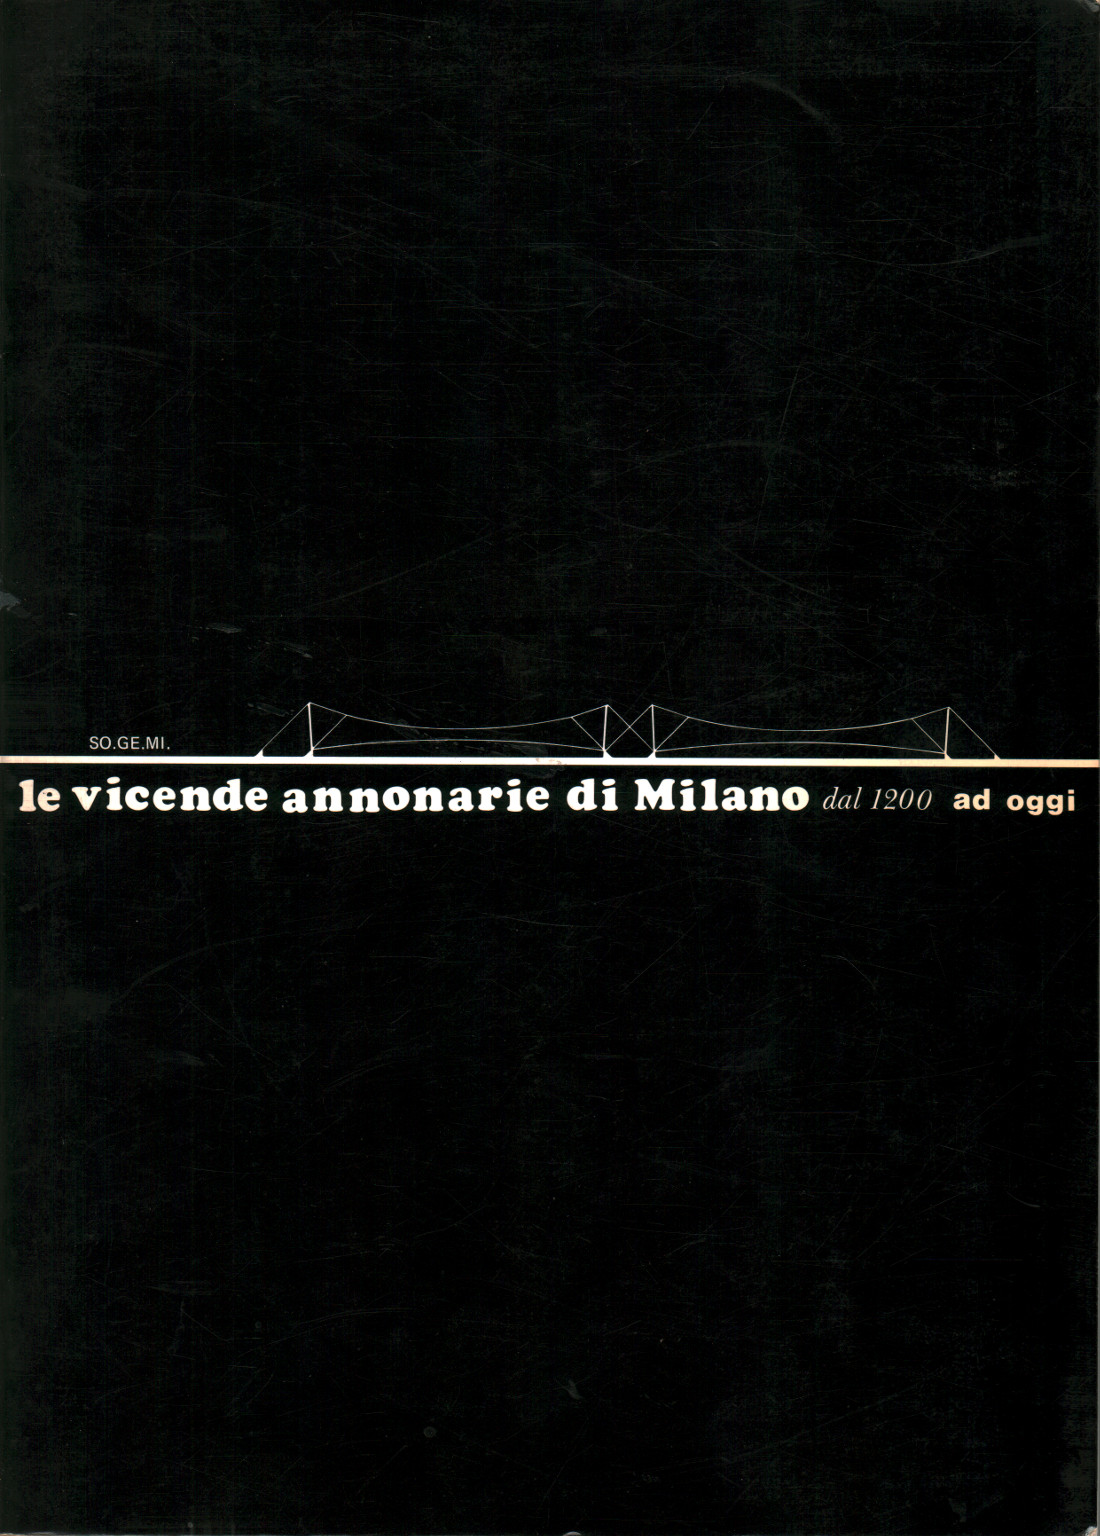 Les événements annotarie de Milan à partir de 1200 à aujourd'hui, s.un.